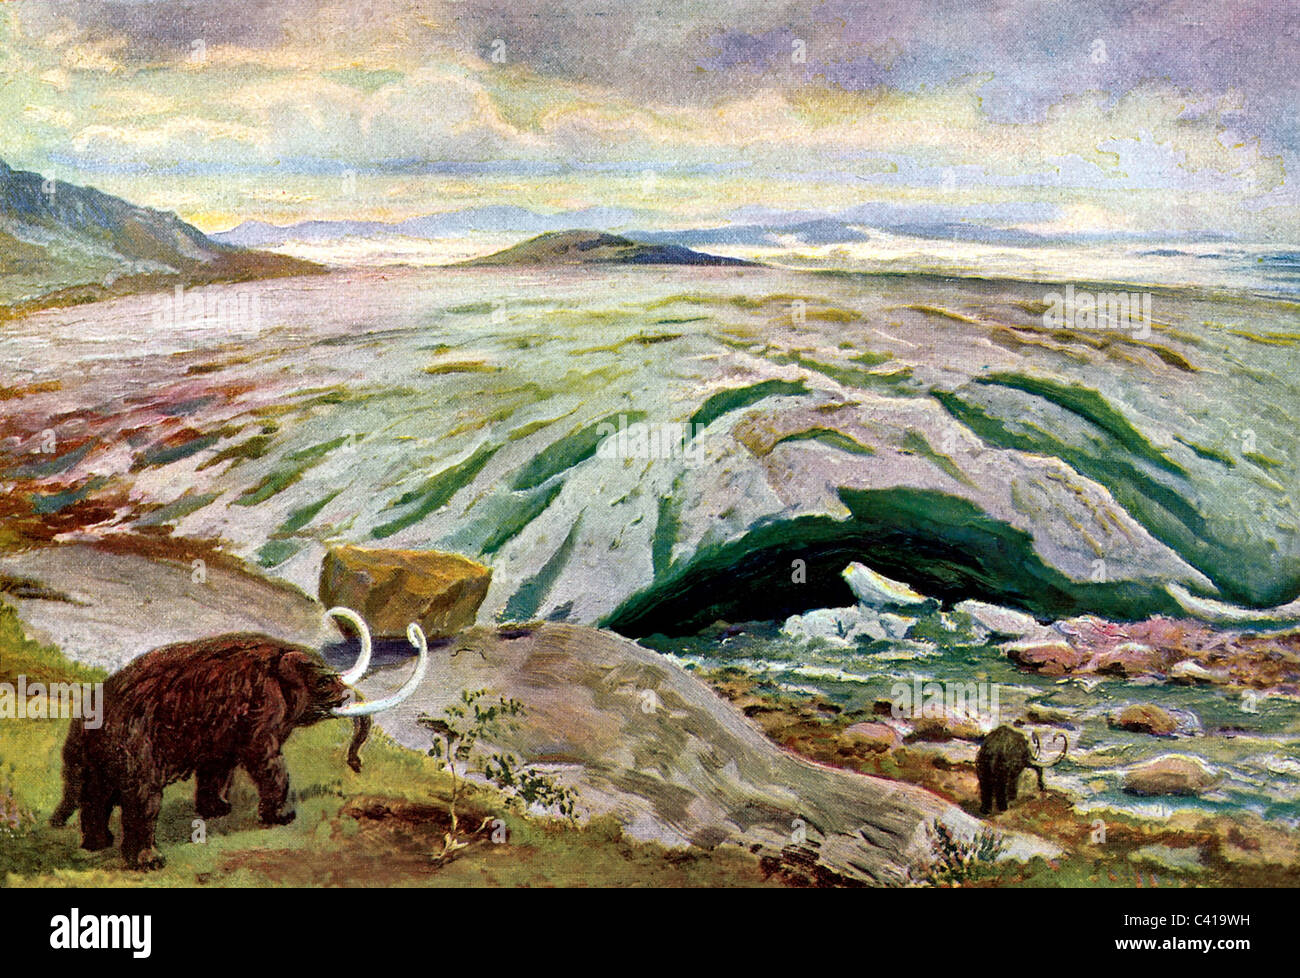 prehistoria, paisaje en edad de hielo, mamuts, ilustración de Wilhelm Kranz, alrededor de 1920, Derechos adicionales-Clearences-no disponible Foto de stock